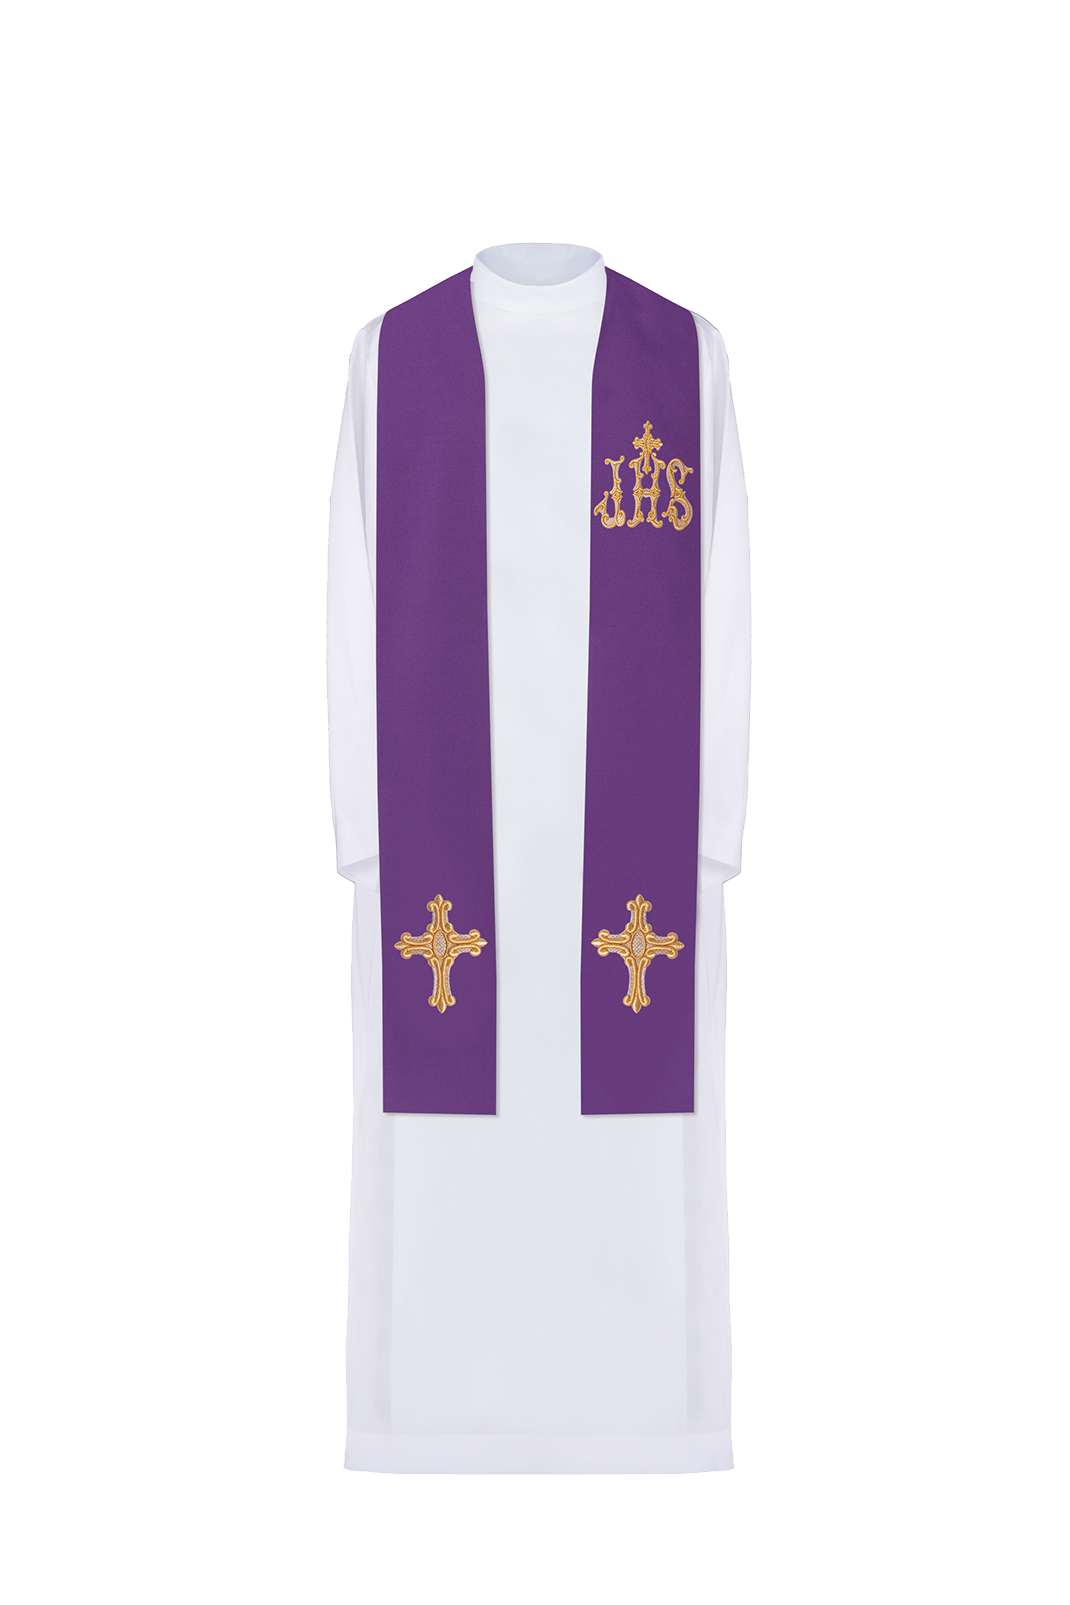 Stuła kapłańska fioletowa haftowana krzyż i IHS